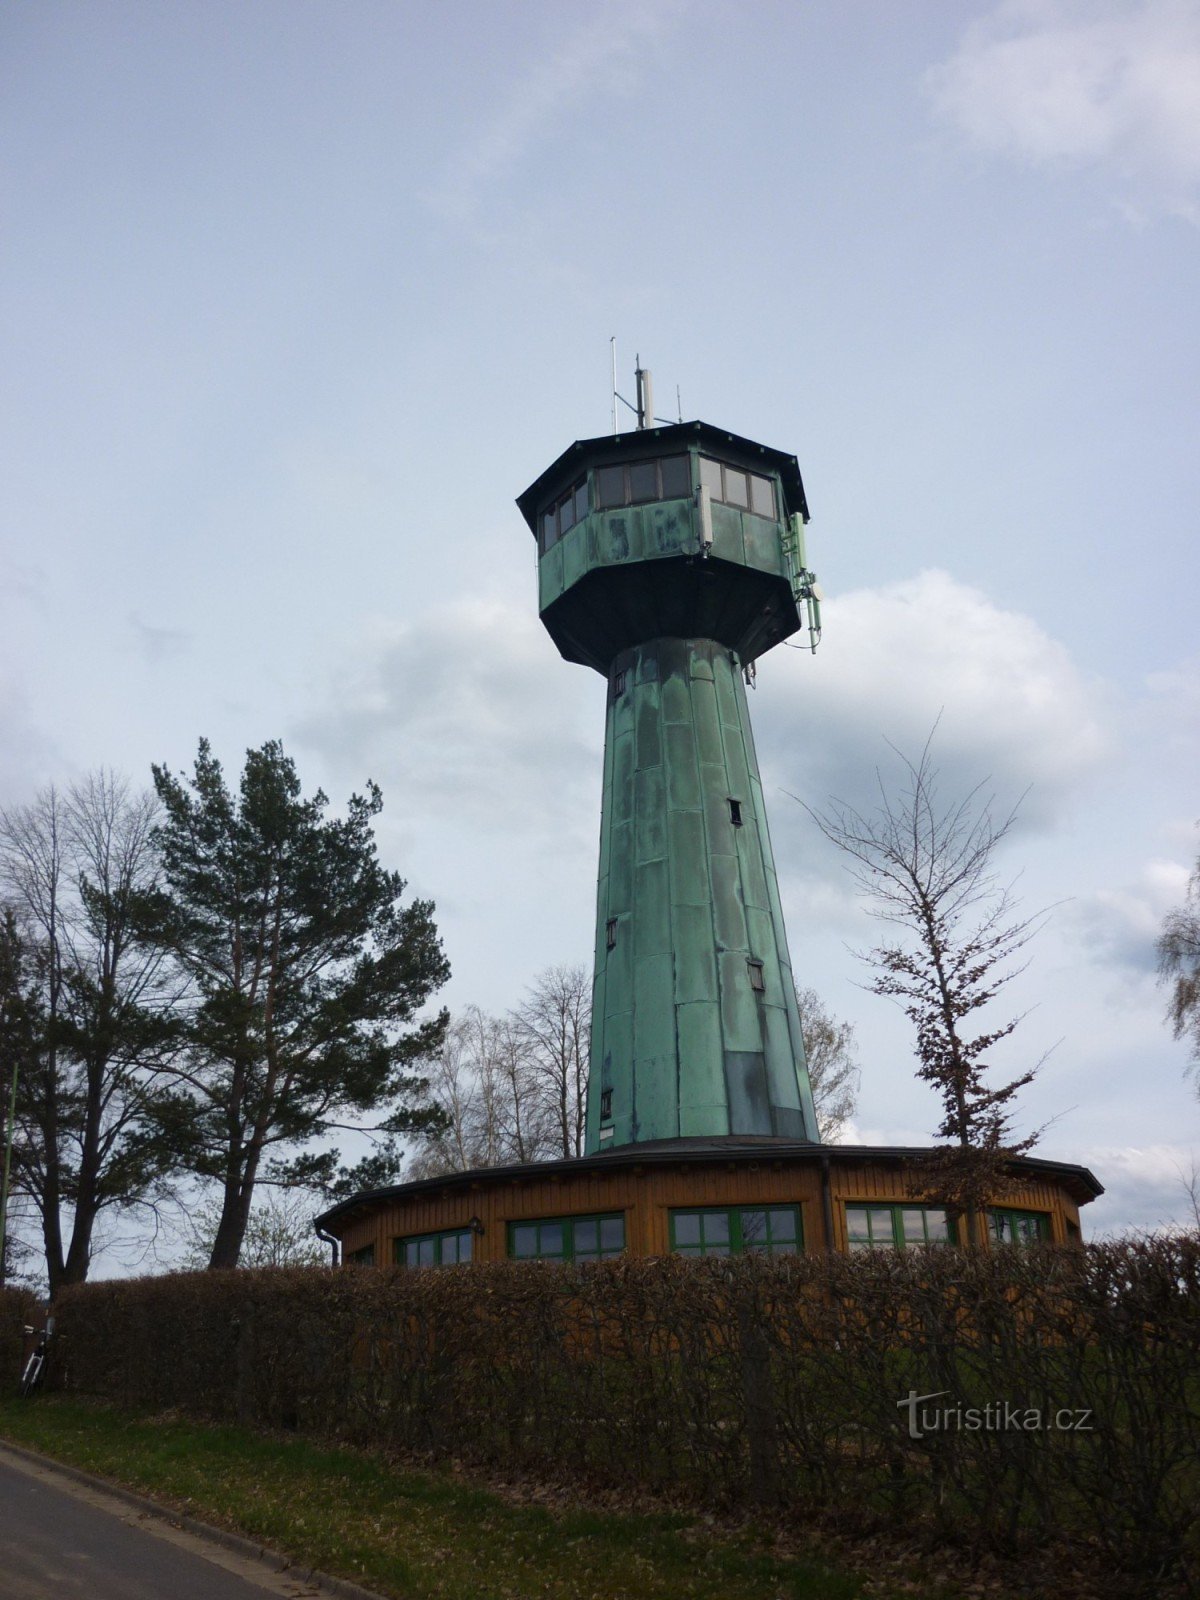 Смотровая башня Grenzelandturm в Нойальбенройте